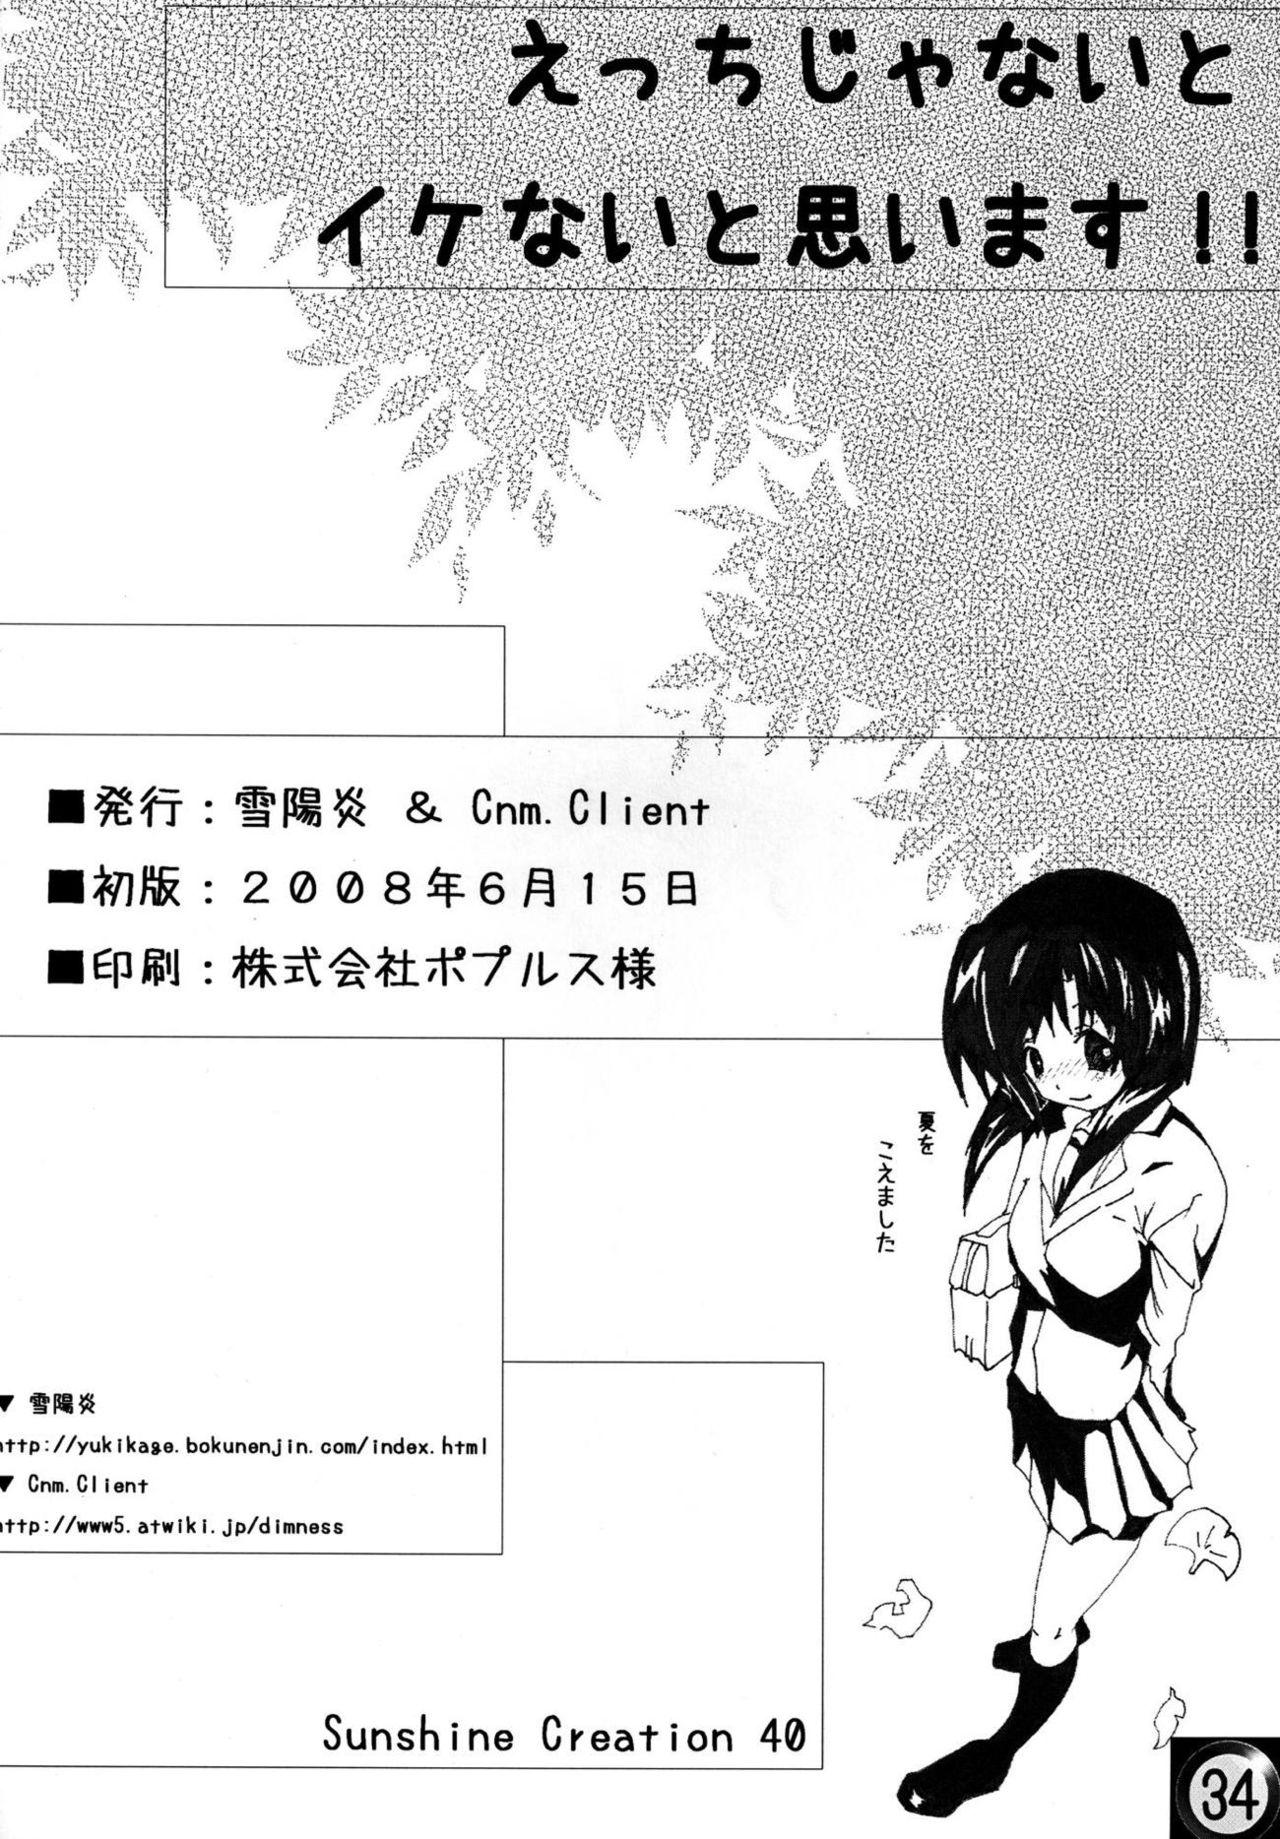 Public Ecchi ja Nai to Ikenai to Omoimasu!! - Higurashi no naku koro ni Uncut - Page 33